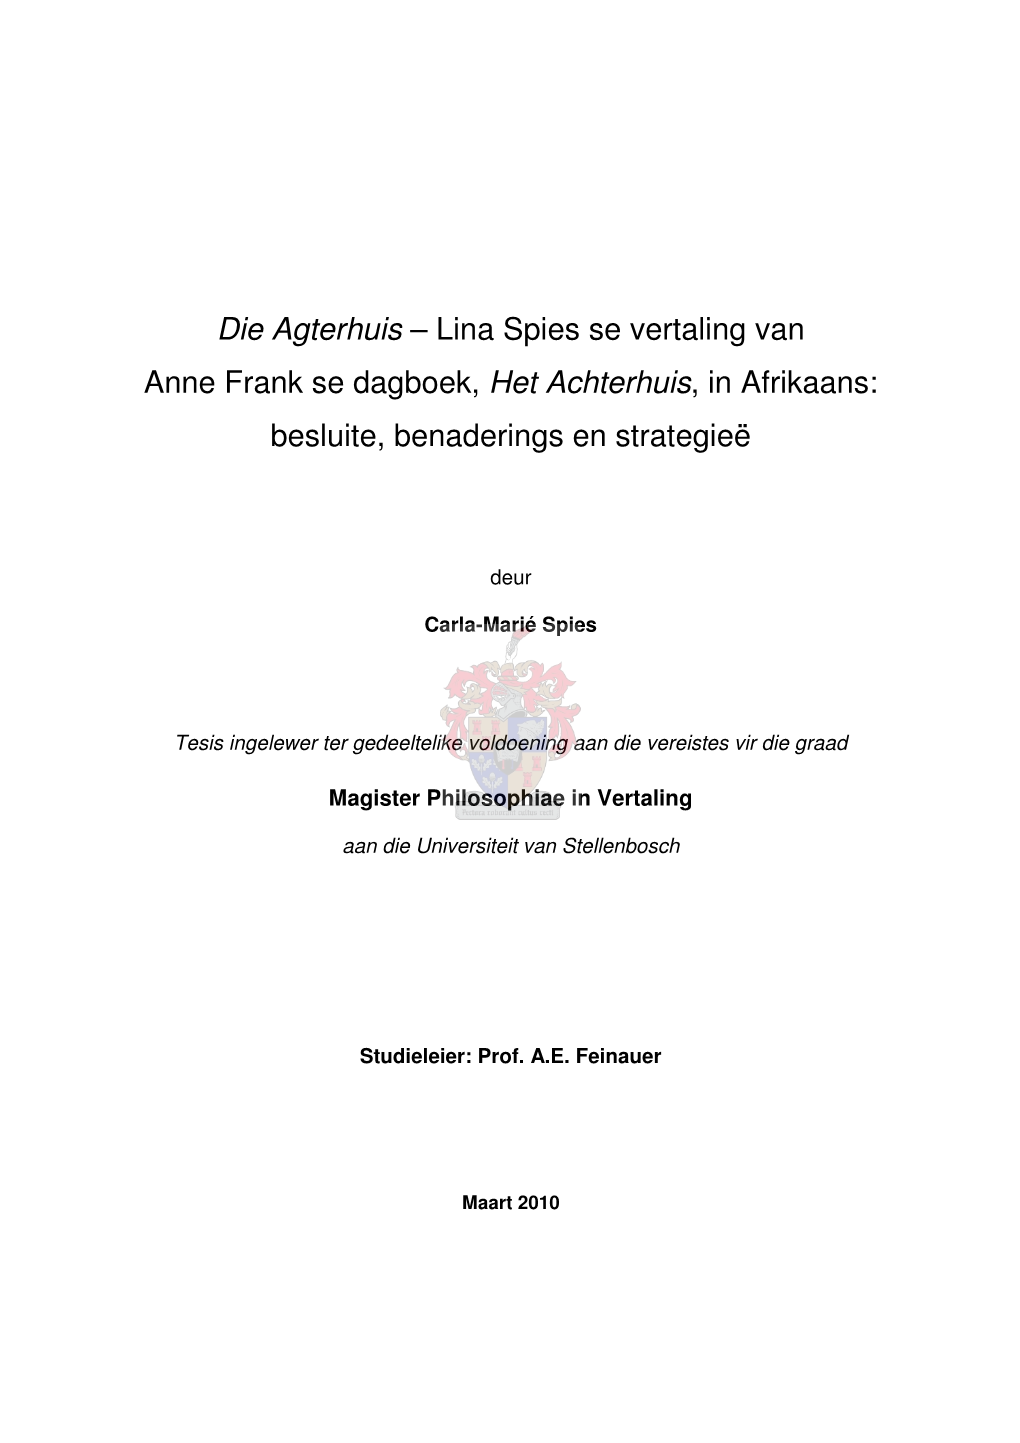 Die Agterhuis – Lina Spies Se Vertaling Van Anne Frank Se Dagboek, Het Achterhuis, in Afrikaans: Besluite, Benaderings En Strategieë